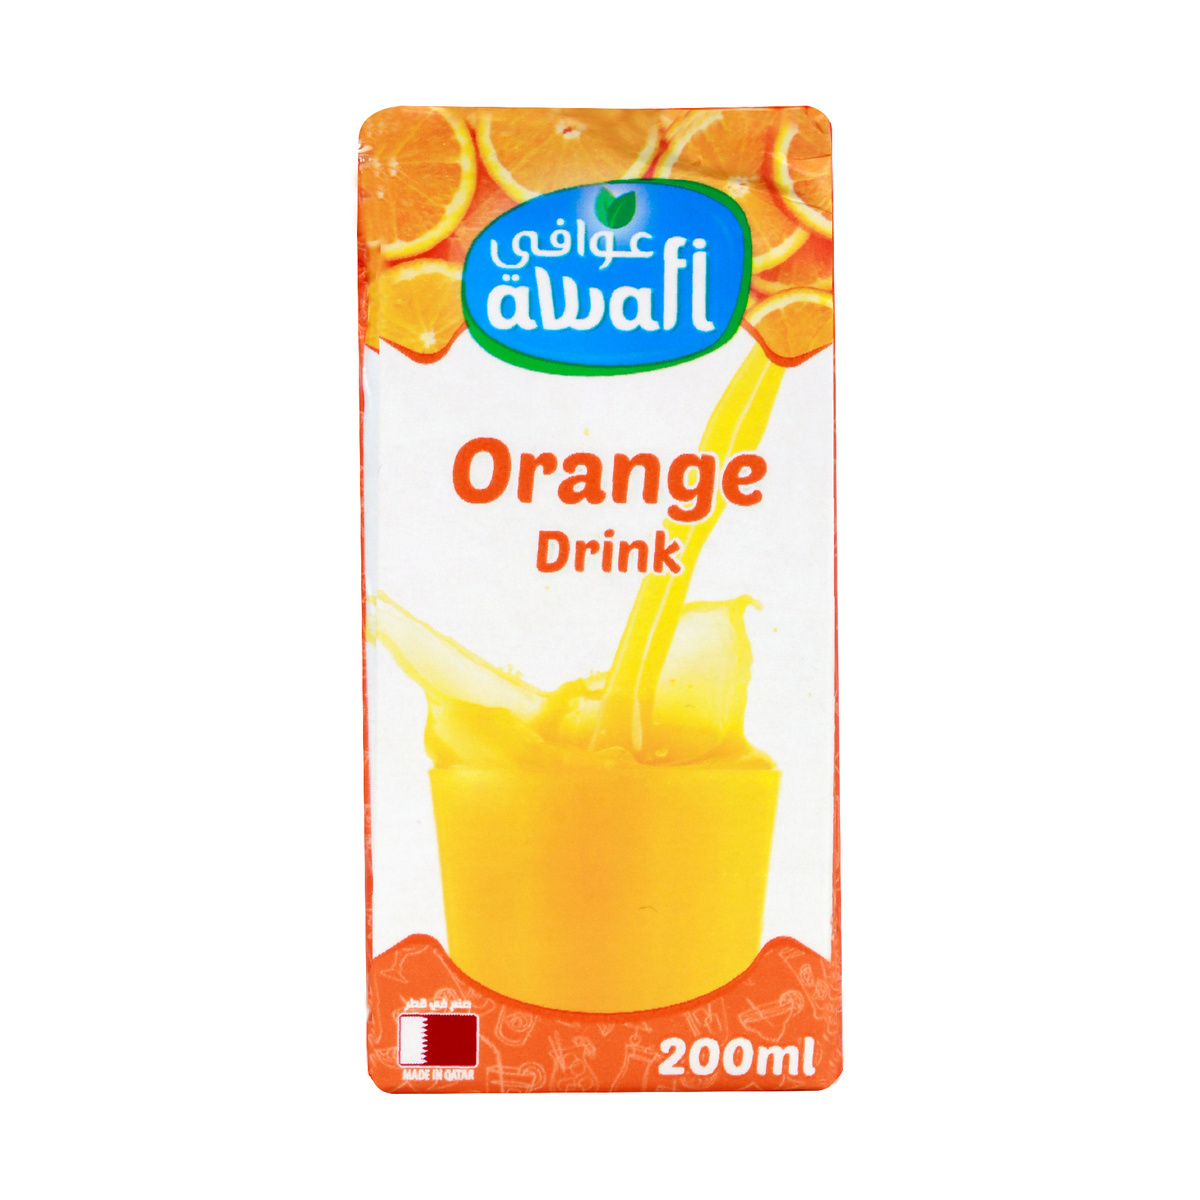 Awafi Orange Drink 200ml